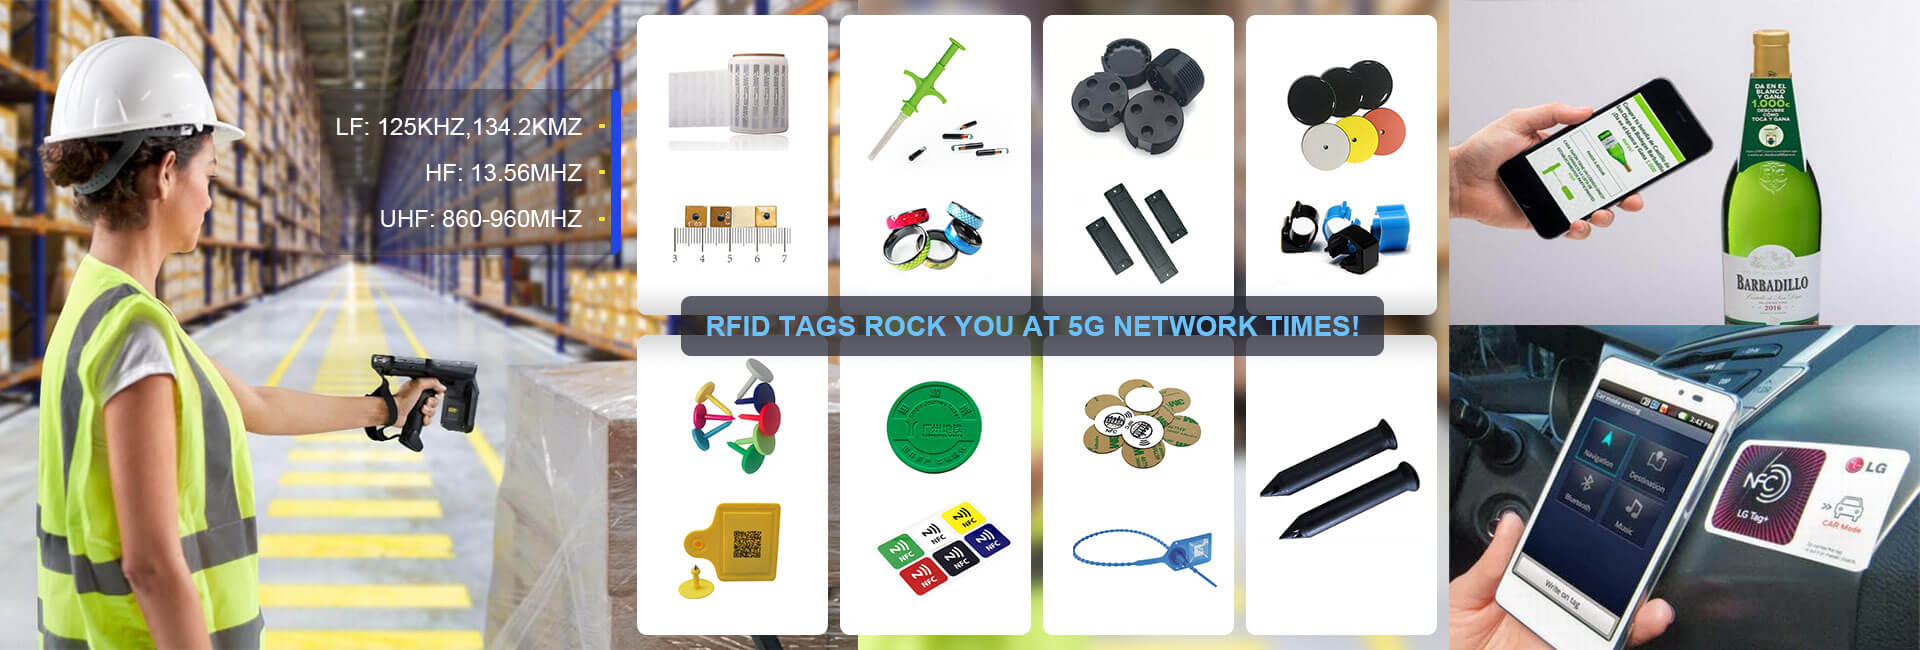 RFID tags